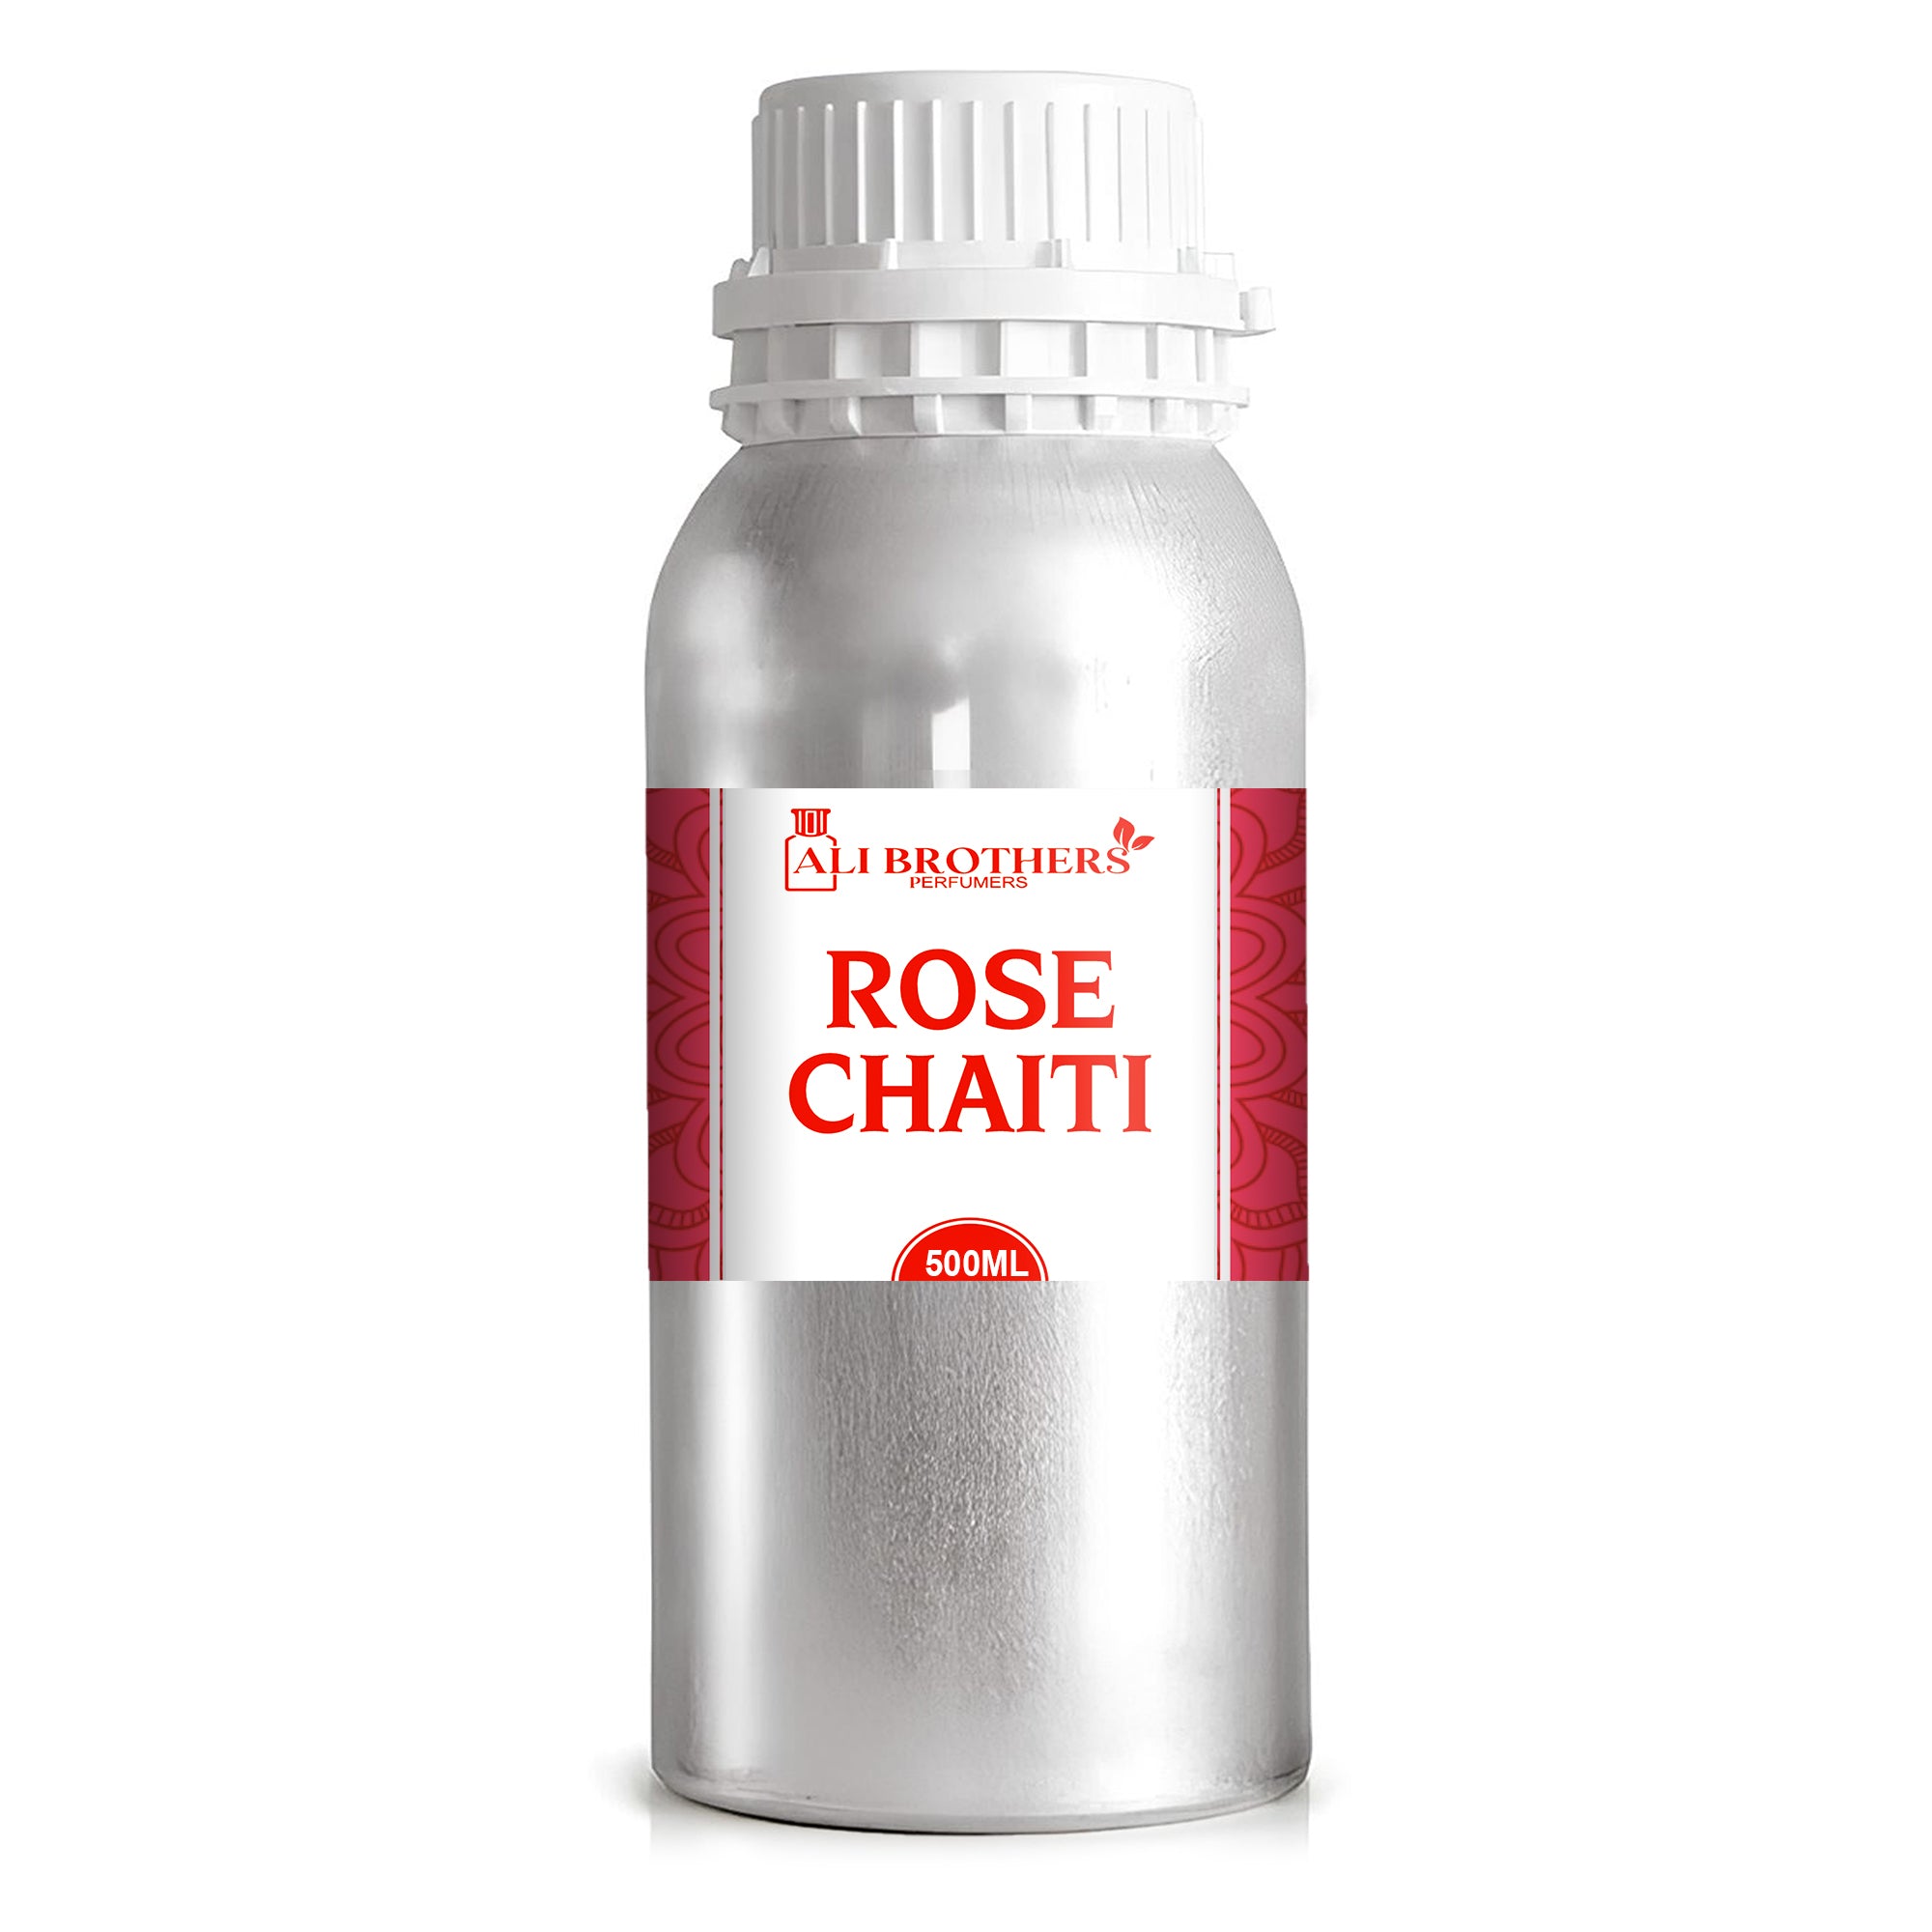 Rose Chaiti